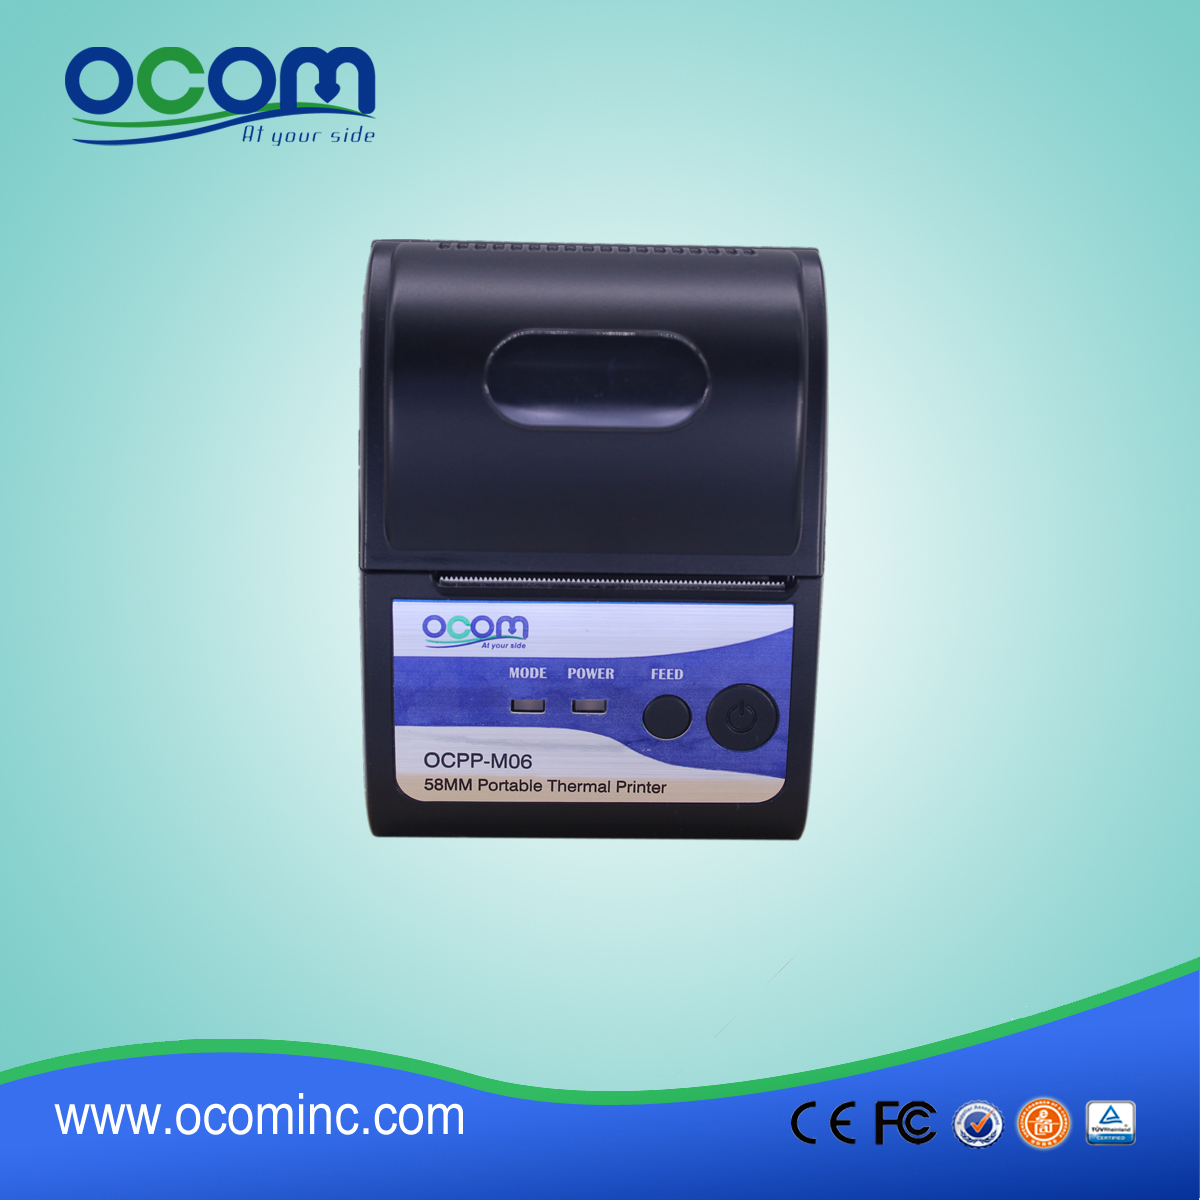 二英寸 pos驱动热收据打印机 (OCPP-M06)